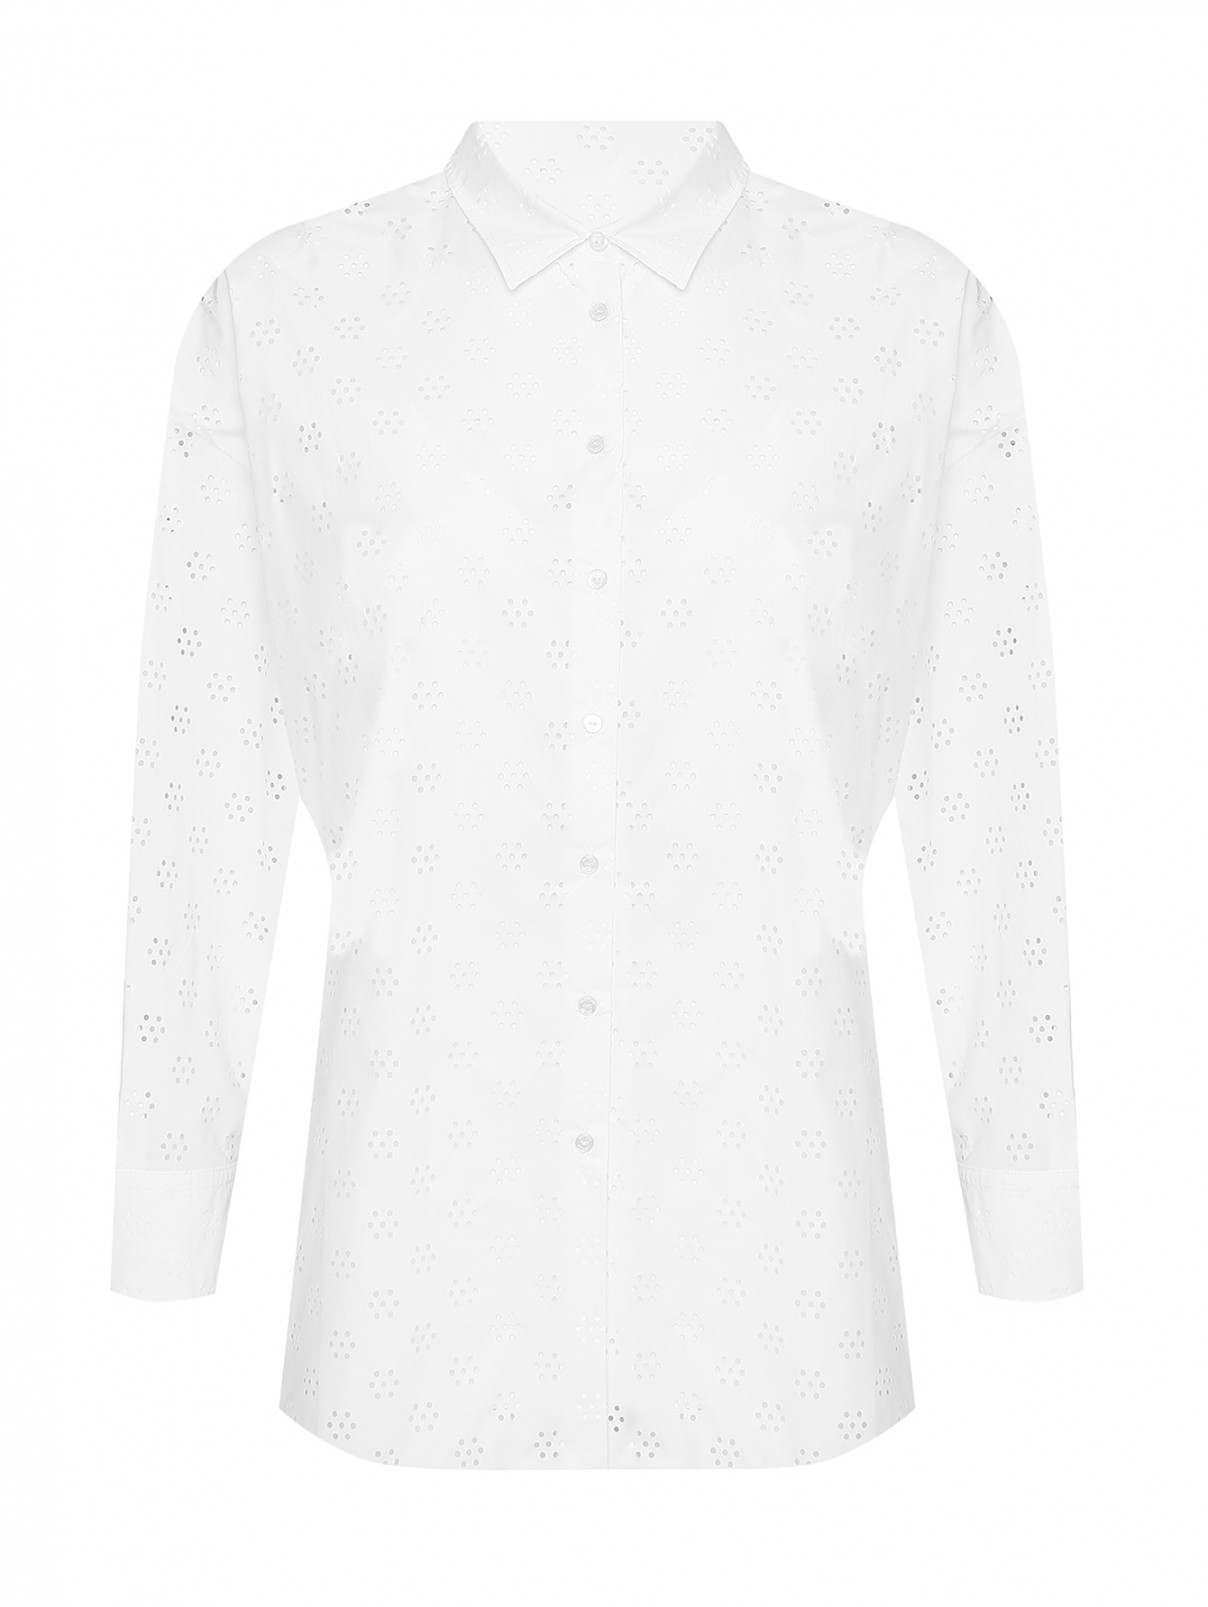 Рубашка из хлопка с перфорацией Marina Rinaldi  –  Общий вид  – Цвет:  Белый